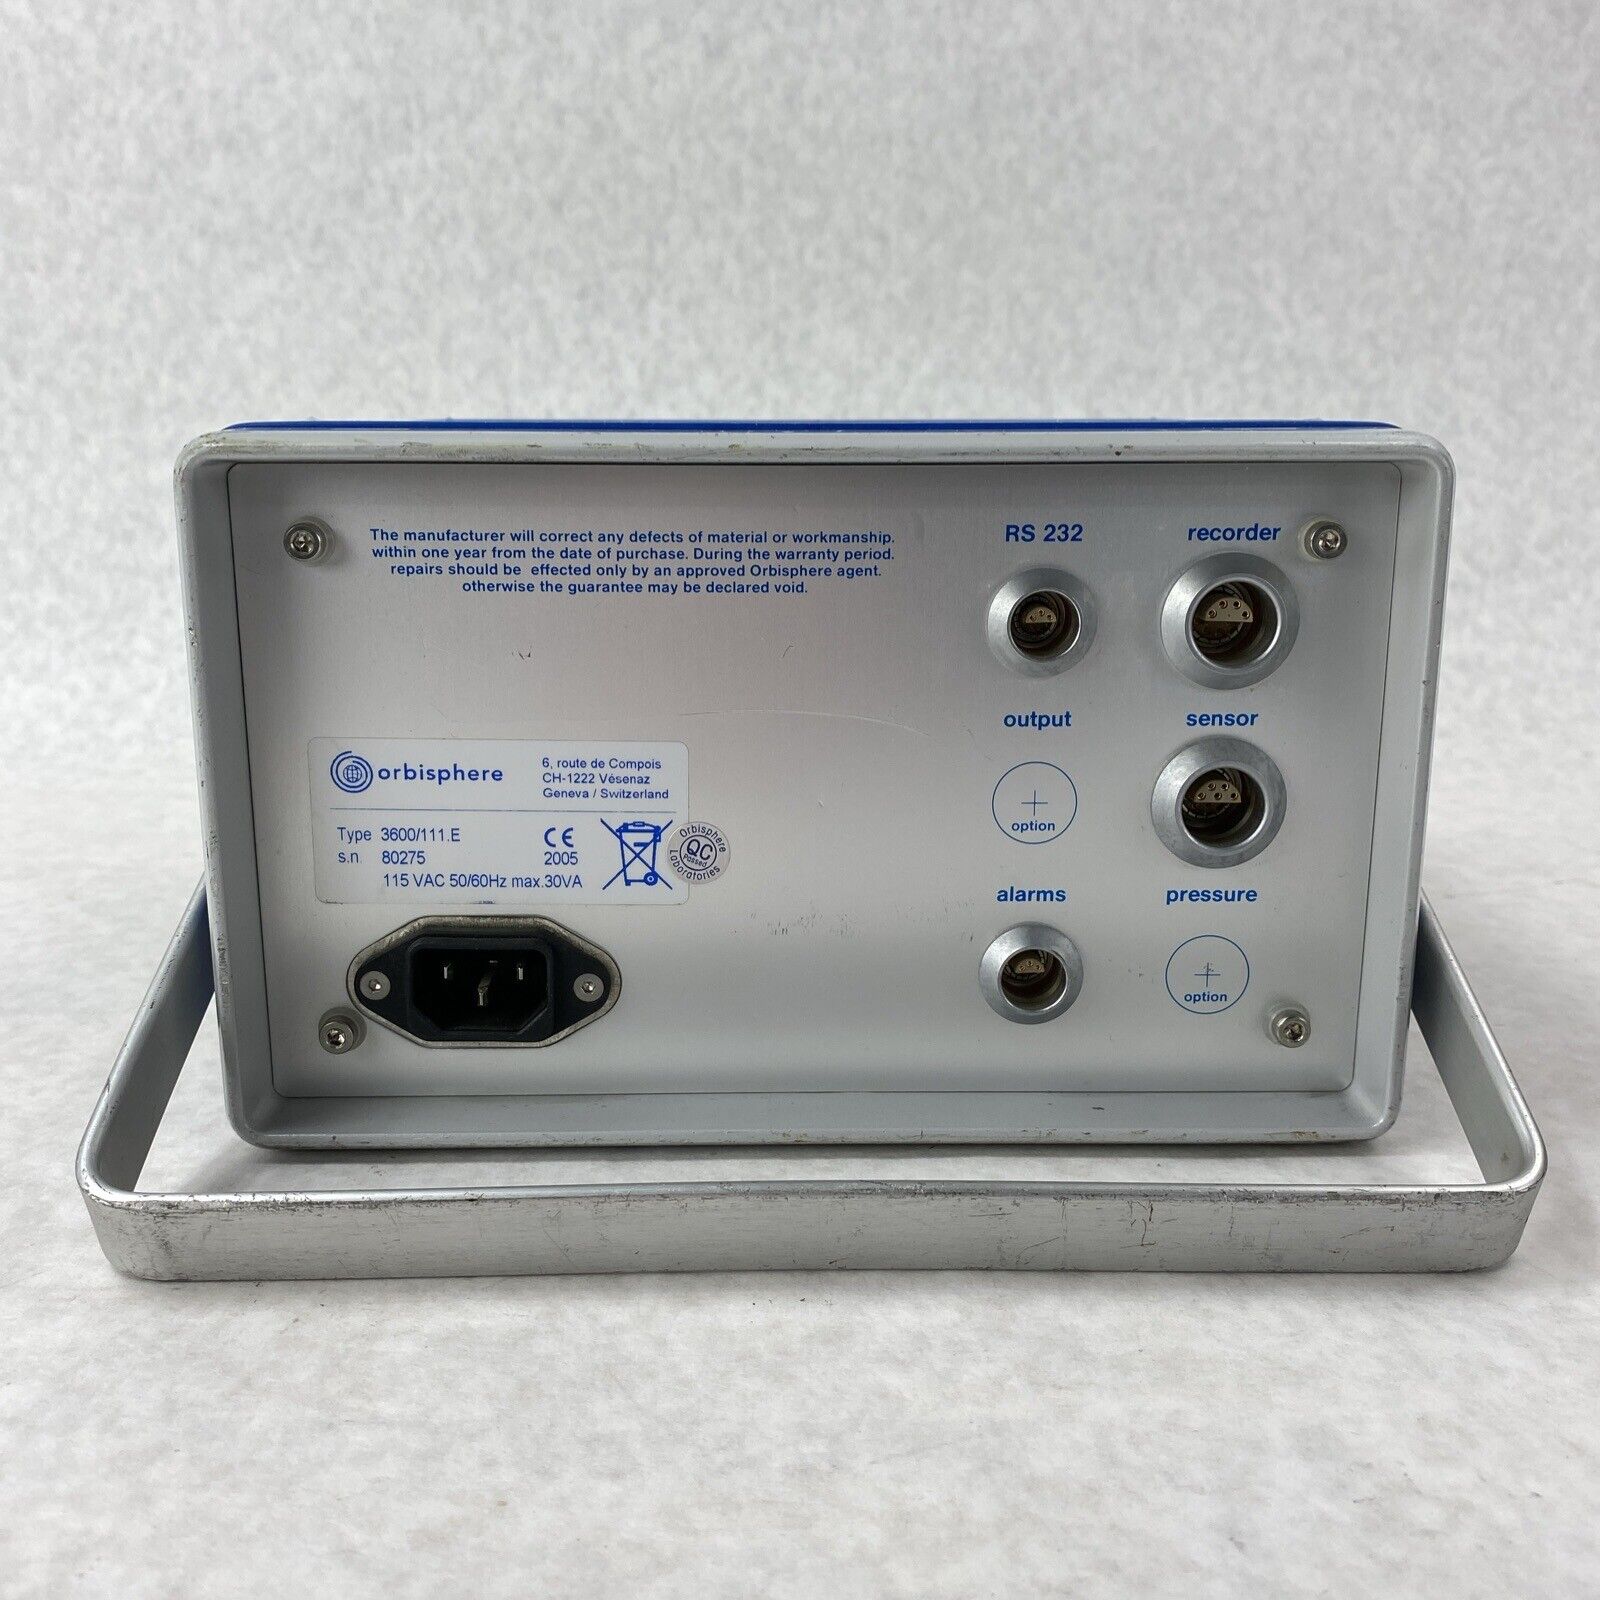 Orbisphere Laboratories Model 3600 Analyzer w/ Key and Power Adapter